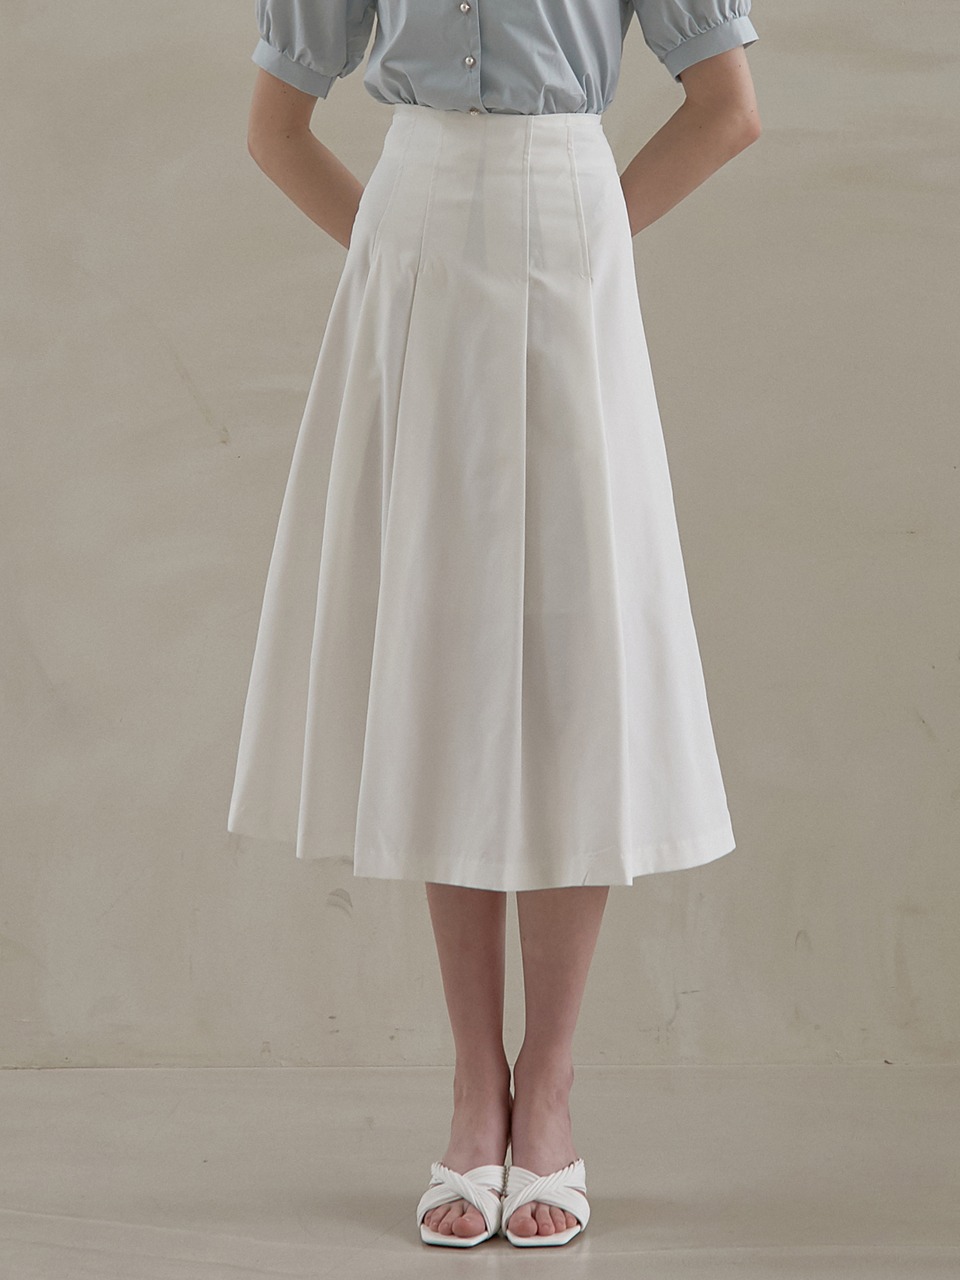 j1002 pin-tuck long skirt (white)